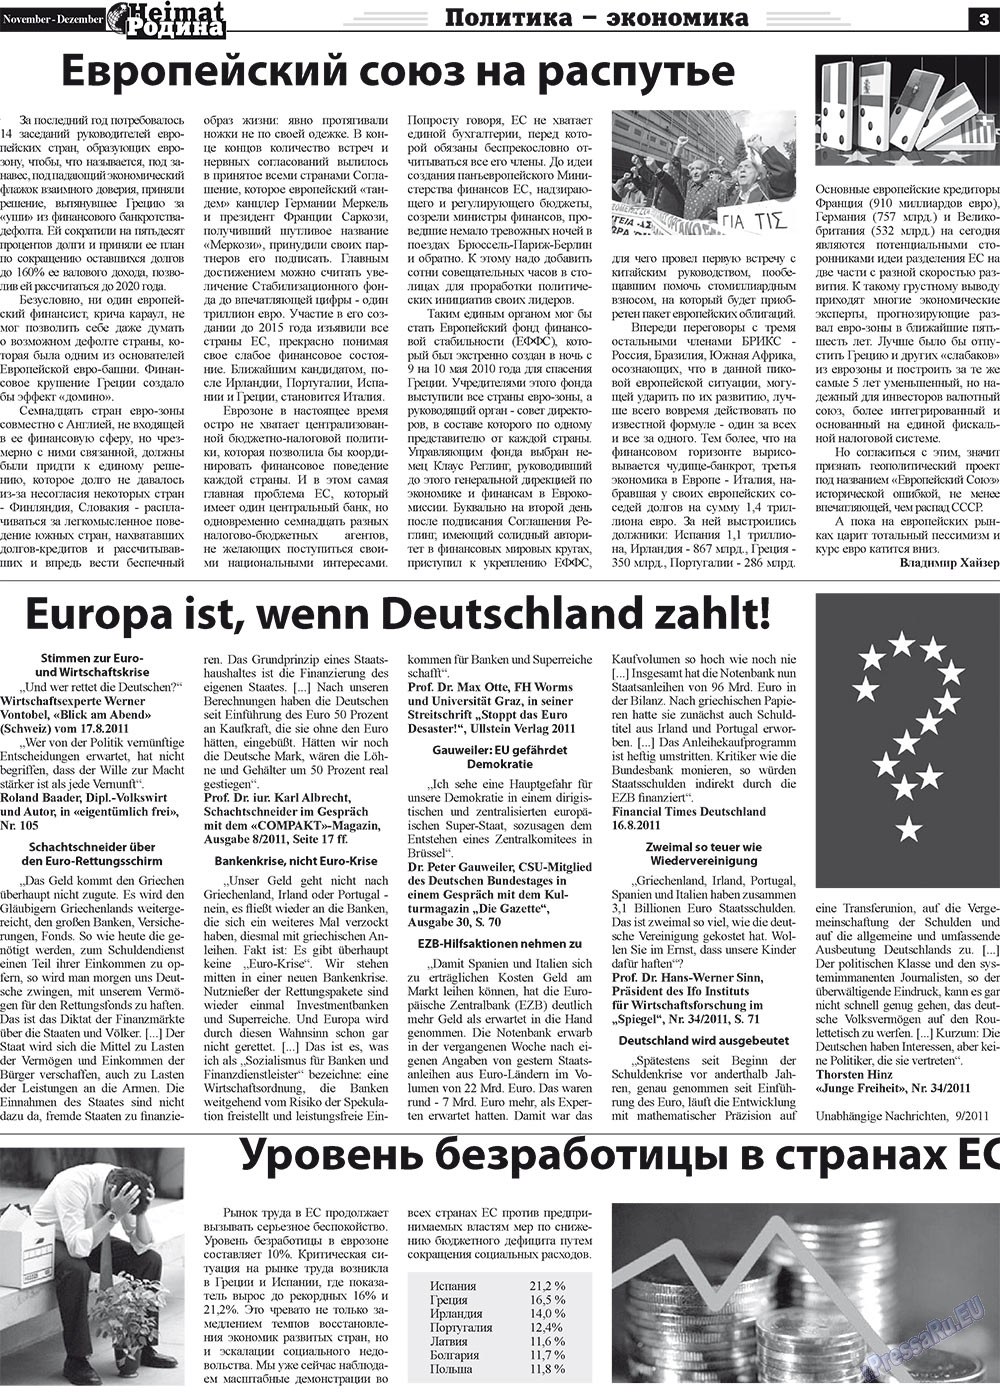 Heimat-Родина (газета). 2011 год, номер 11, стр. 3